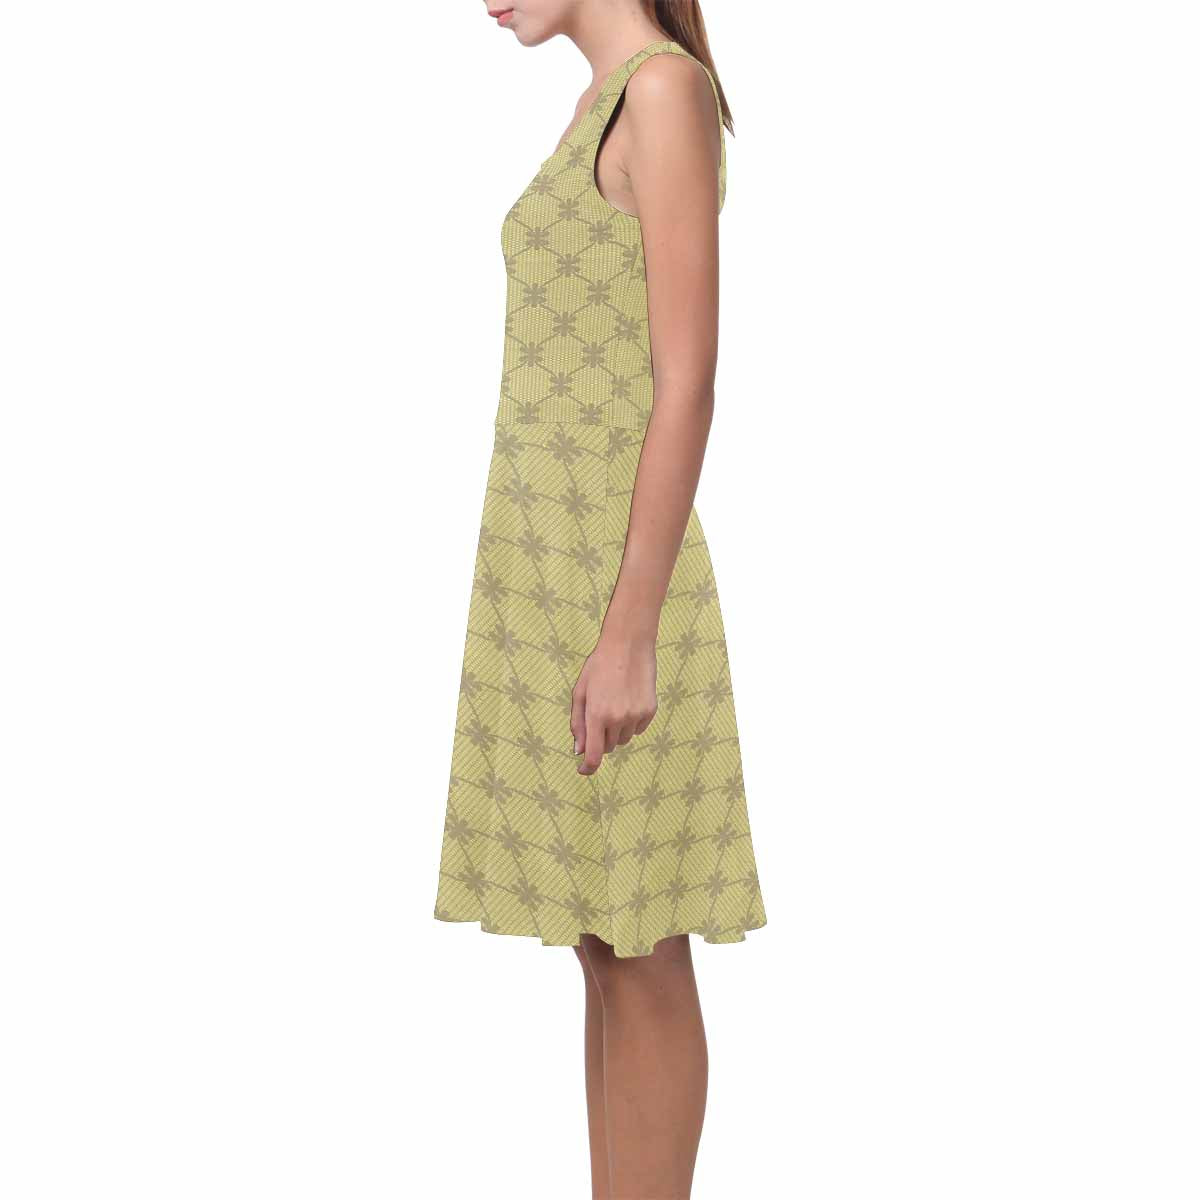 Antique General summer dress, MODEL 09534, design 04